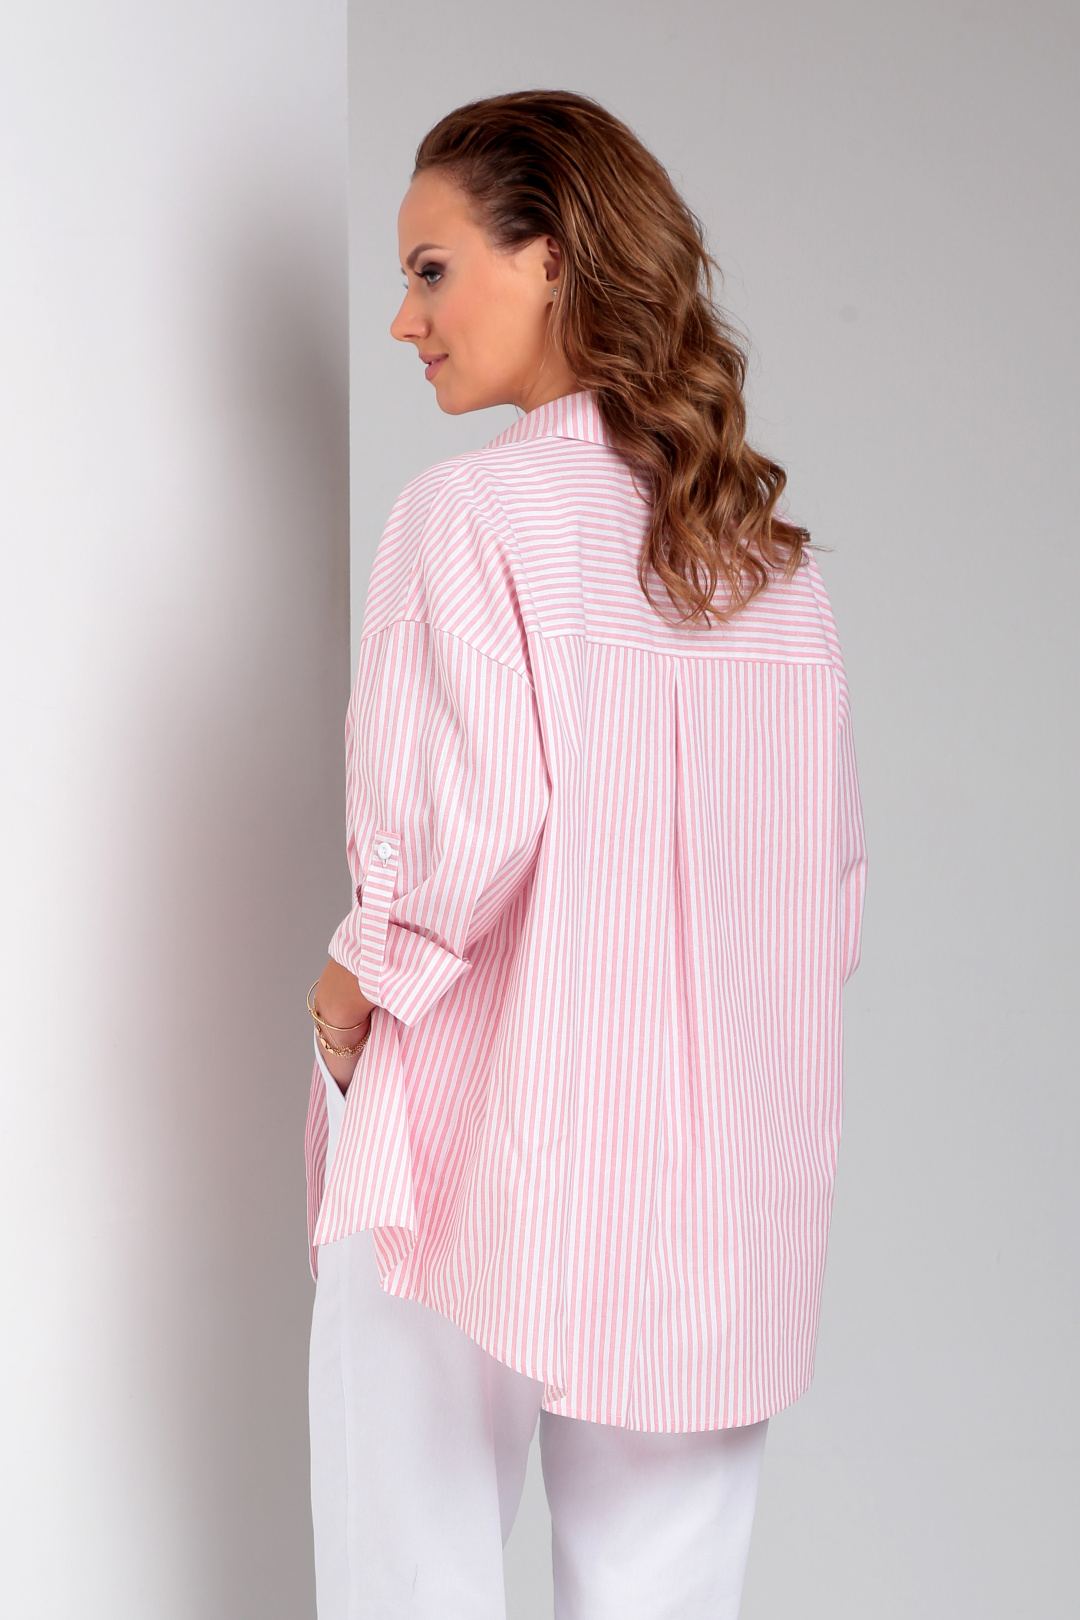 Рубашка Лиона-Стиль 897 розовая полоска